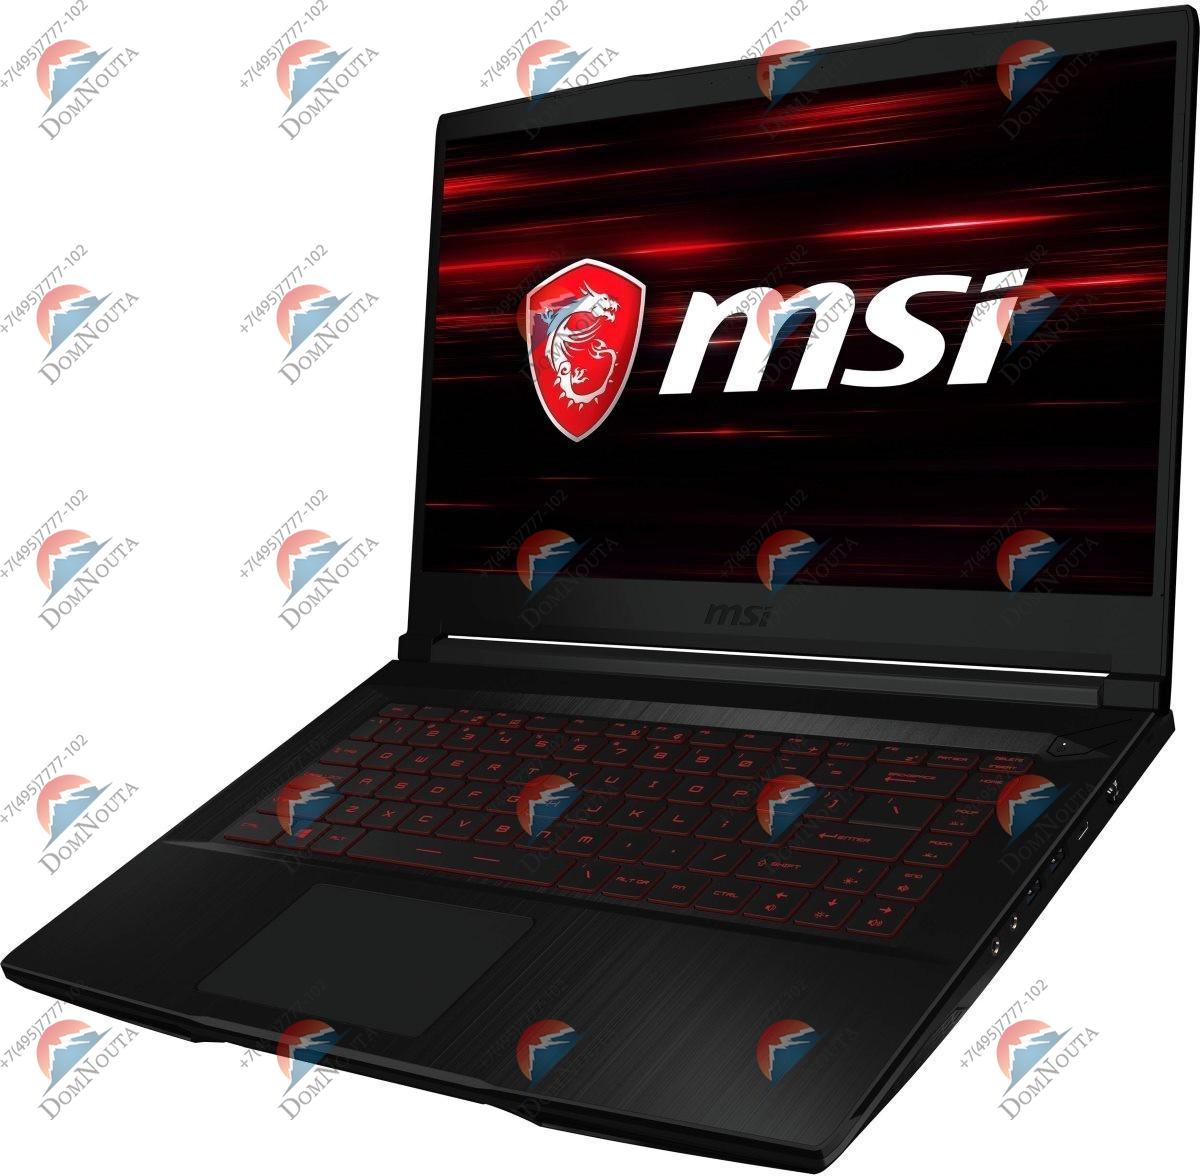 Ноутбук MSI GF63 10UD-417RU Thin